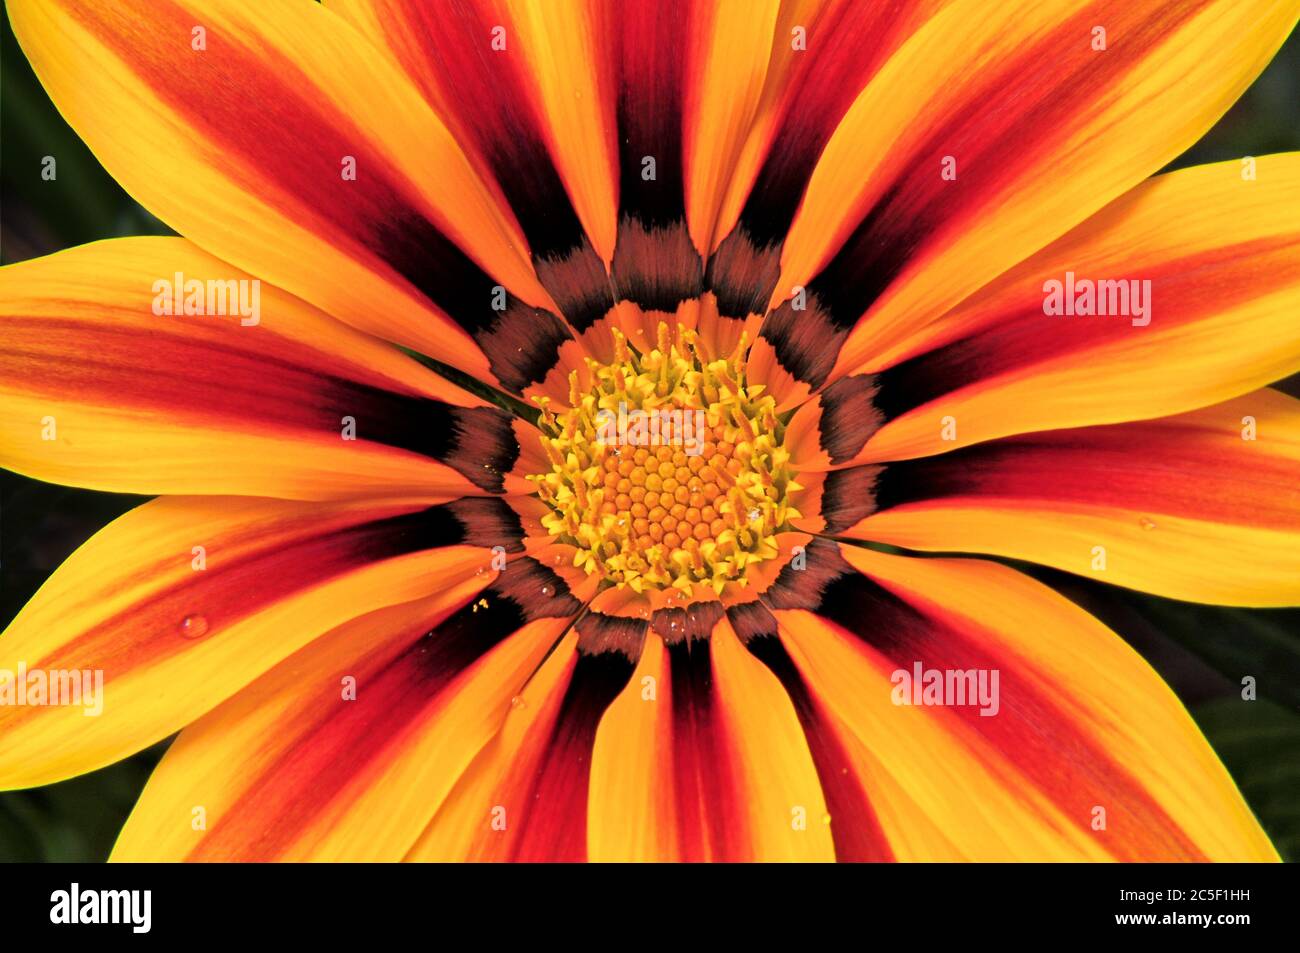 Auffällige Nahaufnahme der lebendigen Gazania Blume (afrikanische Gänseblümchen) mit leuchtend farbigen Blütenblättern aus Gelb, Rot, Orange und Bronze. Stockfoto